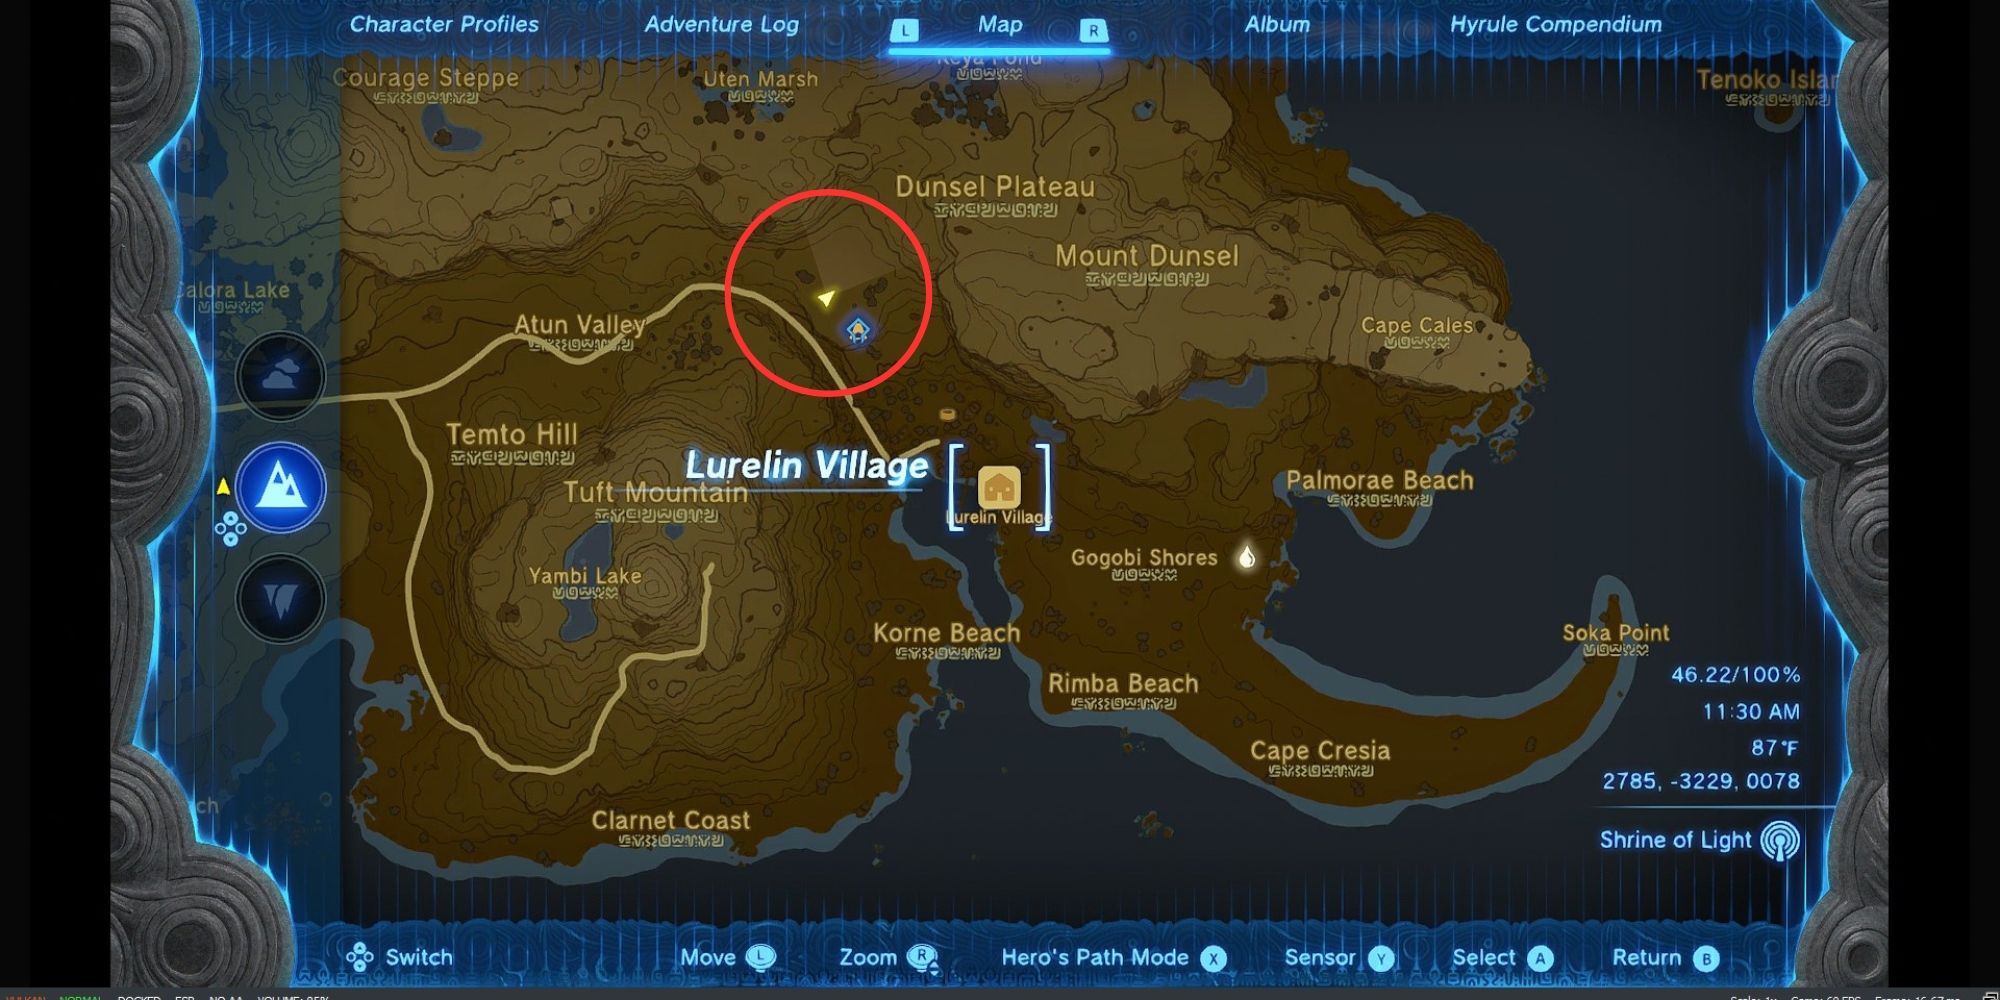 screenshot van de kaart met de nadruk op hylian rijstteeltplekken nabij Lurelin Villageotk